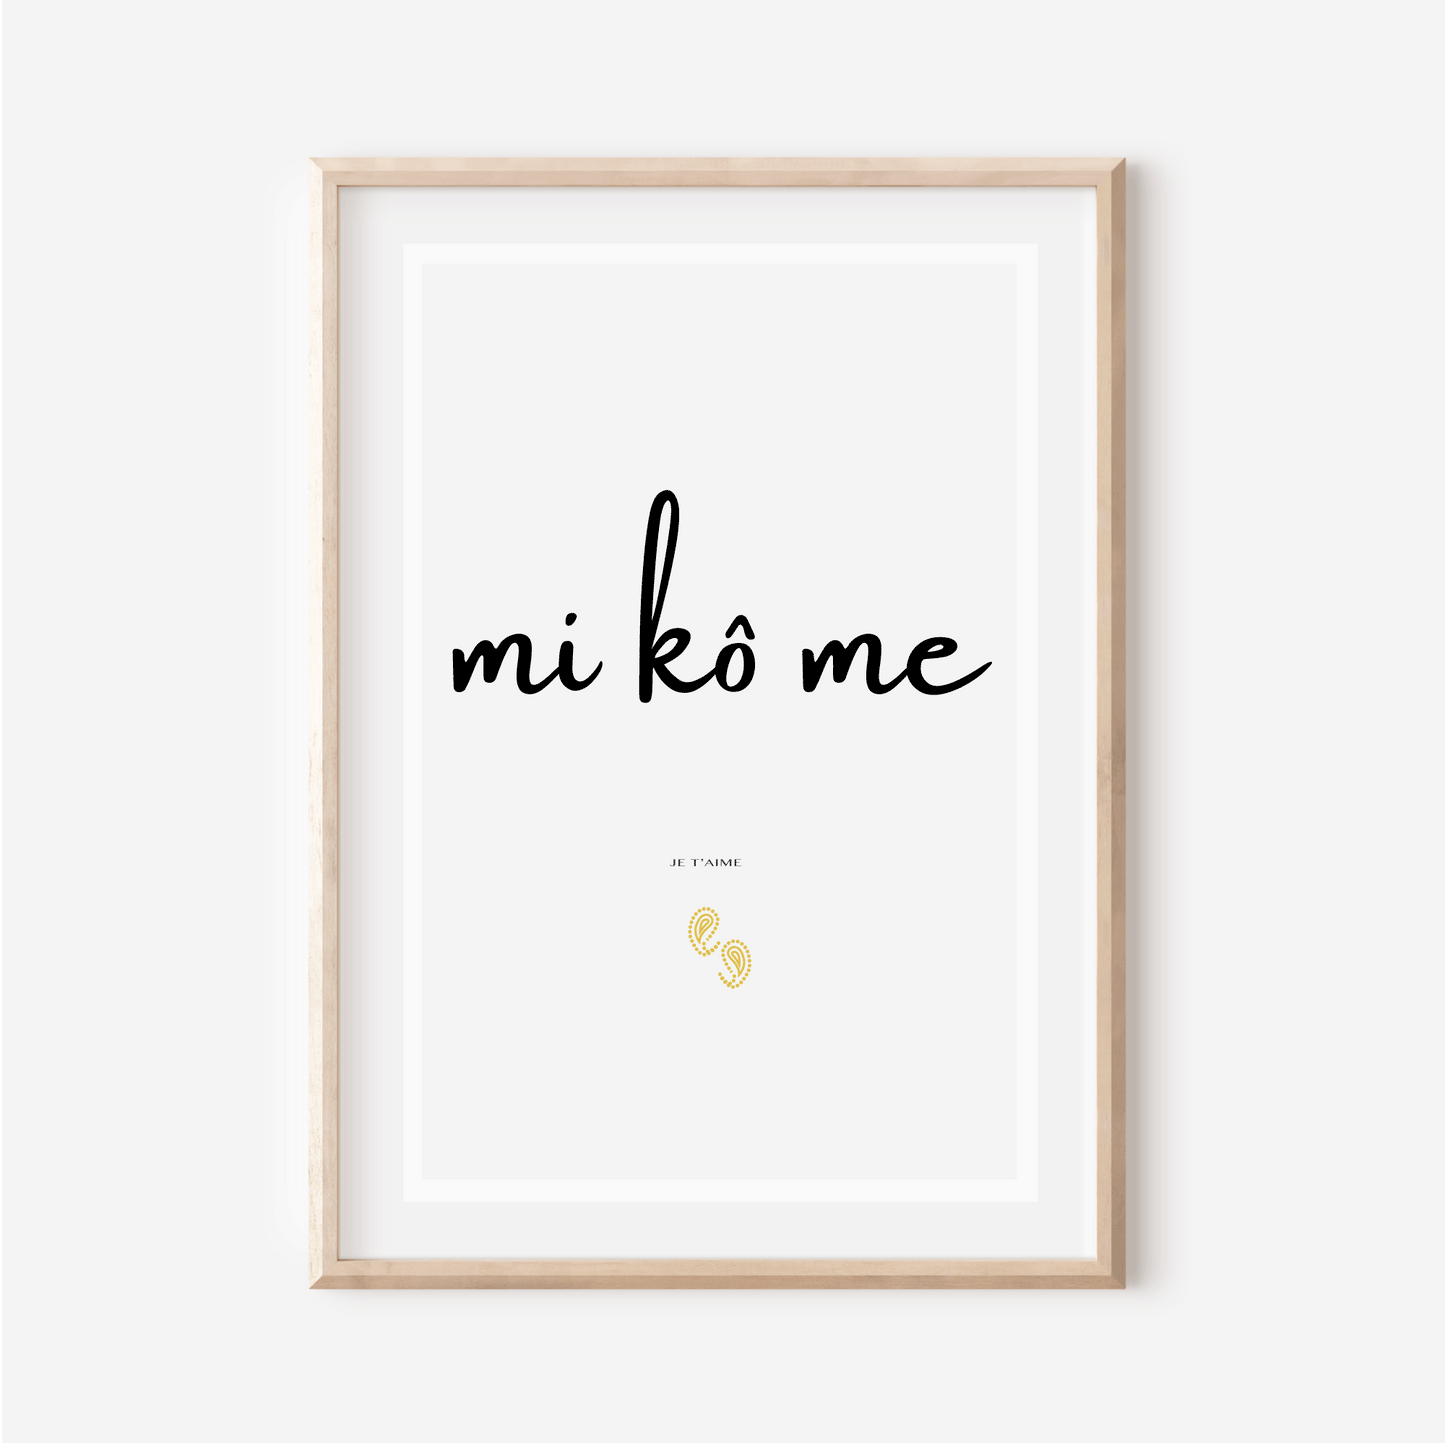 Affiche "Je t aime" en Gbaya - "Mi kô mé" - 30x40 cm